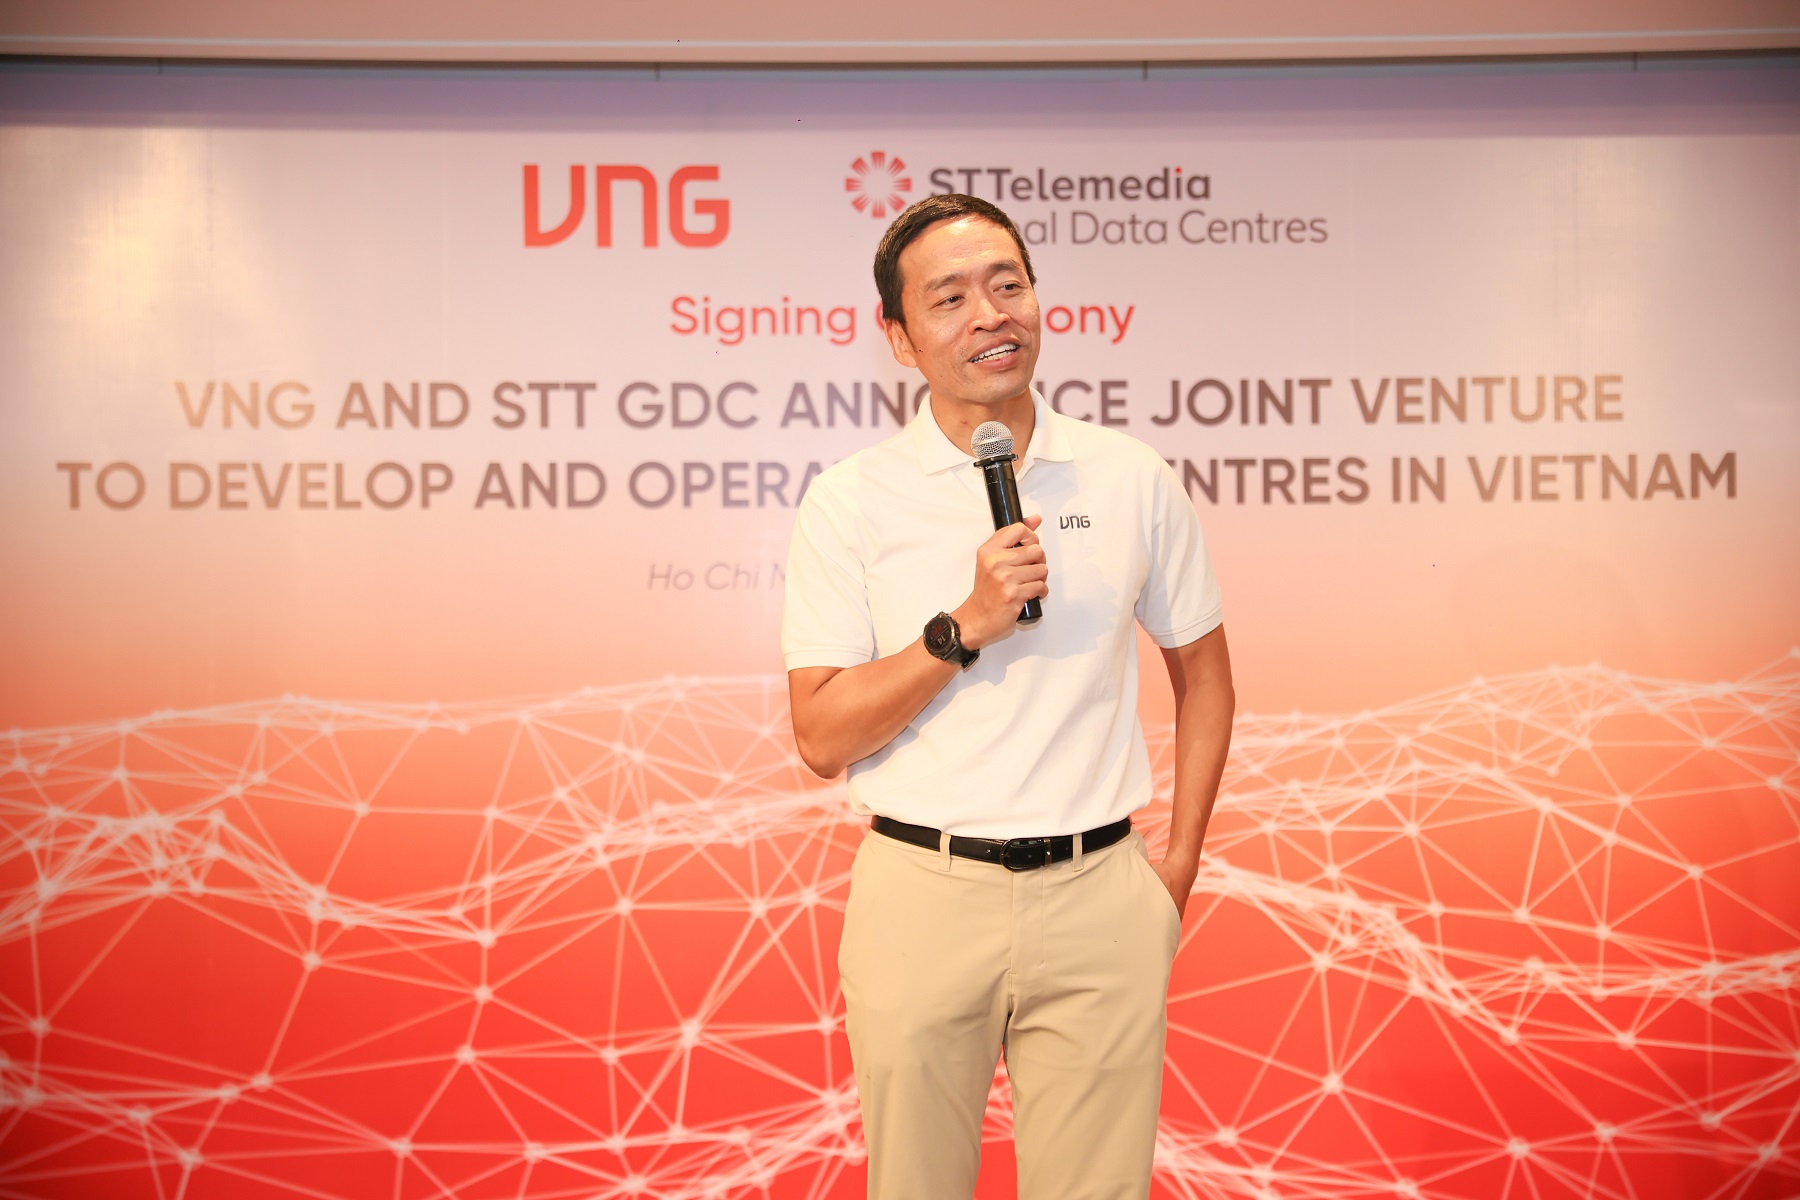 ST Telemedia Global Data Centres liên doanh với VNG, đầu tư xây dựng Trung tâm dữ liệu quy mô lớn tại TPHCM - Mr Le Hong Minh Founder CEO VNG.Opening Speech